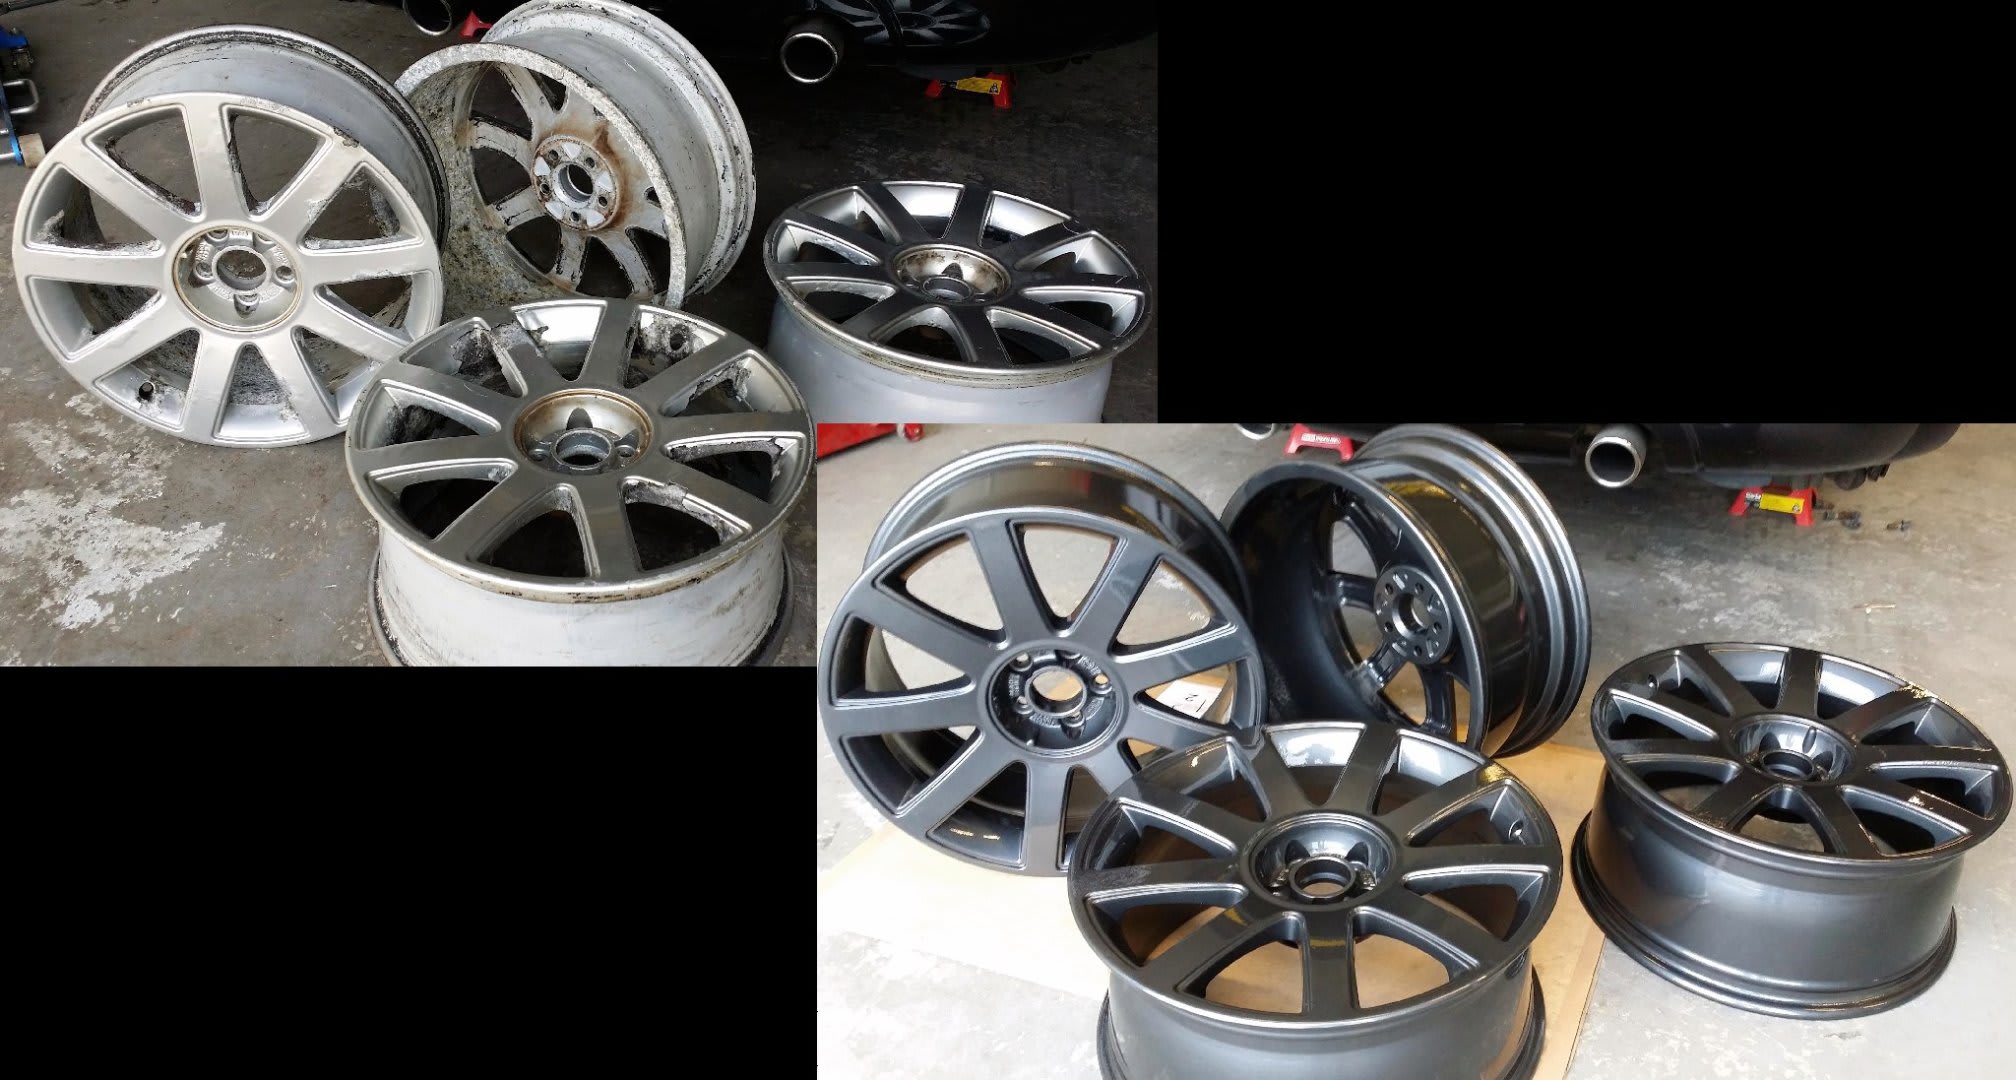 Top Wheels Mobile Alloy Wheel Repairs & Refurbishment Morecambe 07508 707792